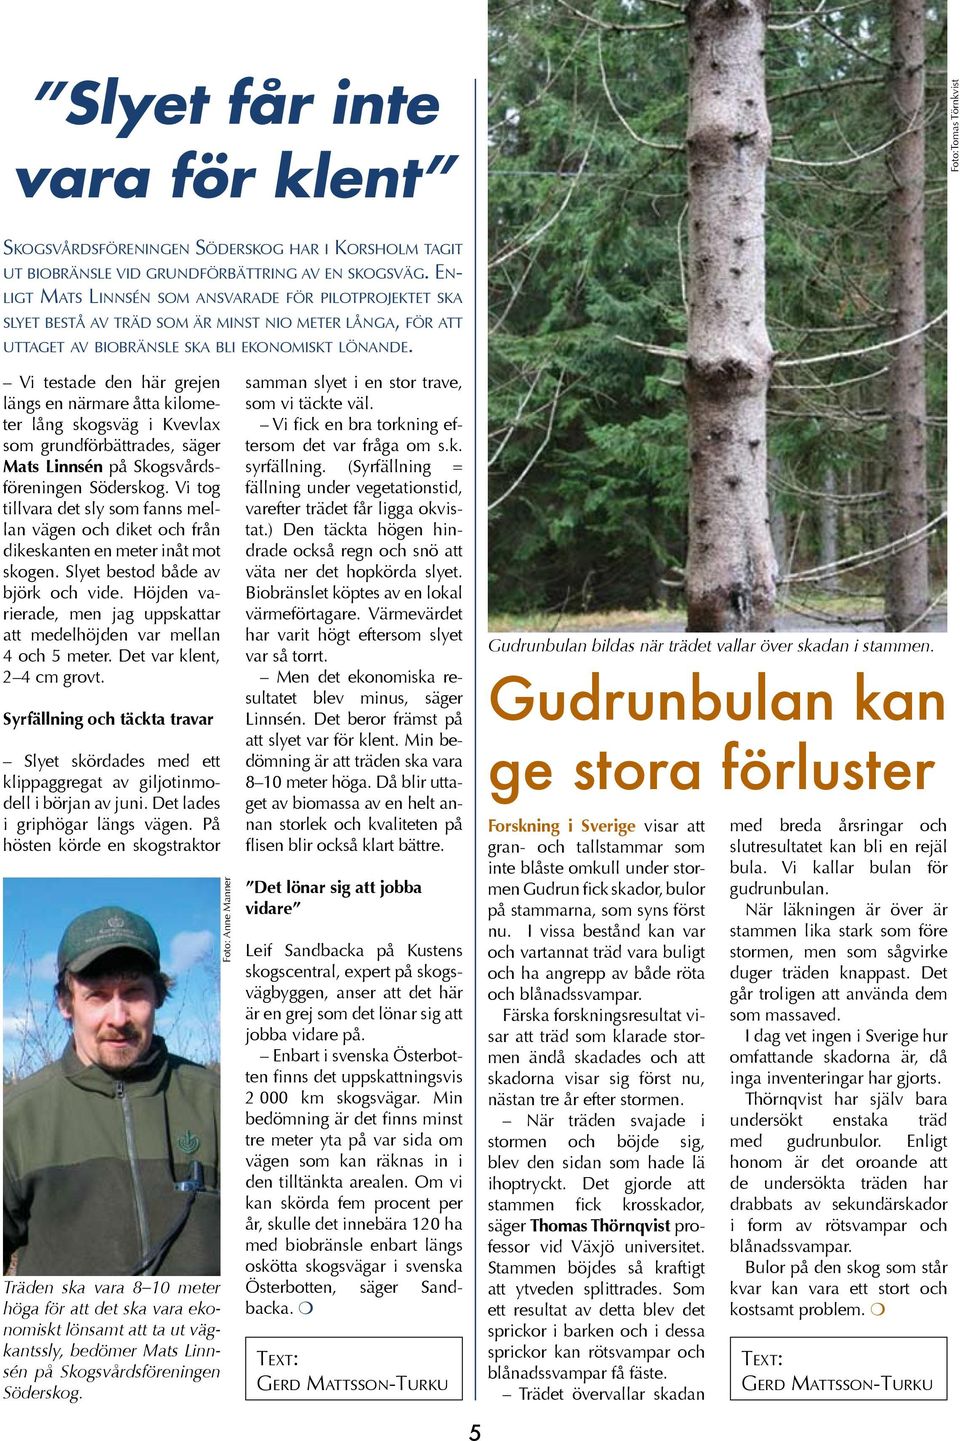 Vi testade den här grejen längs en närmare åtta kilometer lång skogsväg i Kvevlax som grundförbättrades, säger Mats Linnsén på Skogsvårdsföreningen Söderskog.